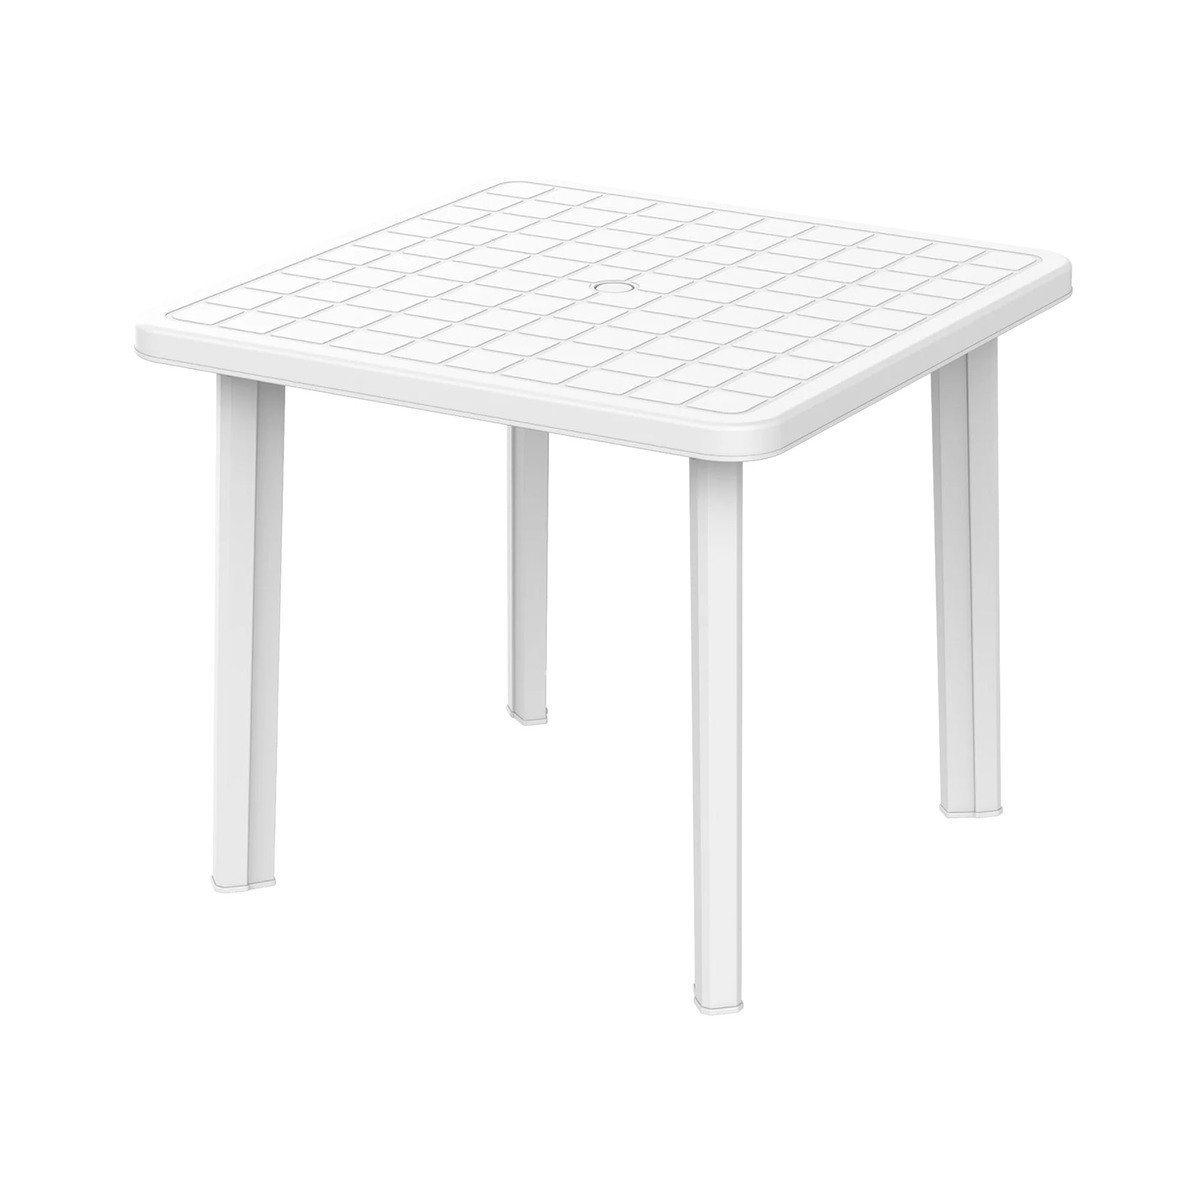 كوزموبلاست طاولة حديقة مربعة 85 سم IFOFXX065